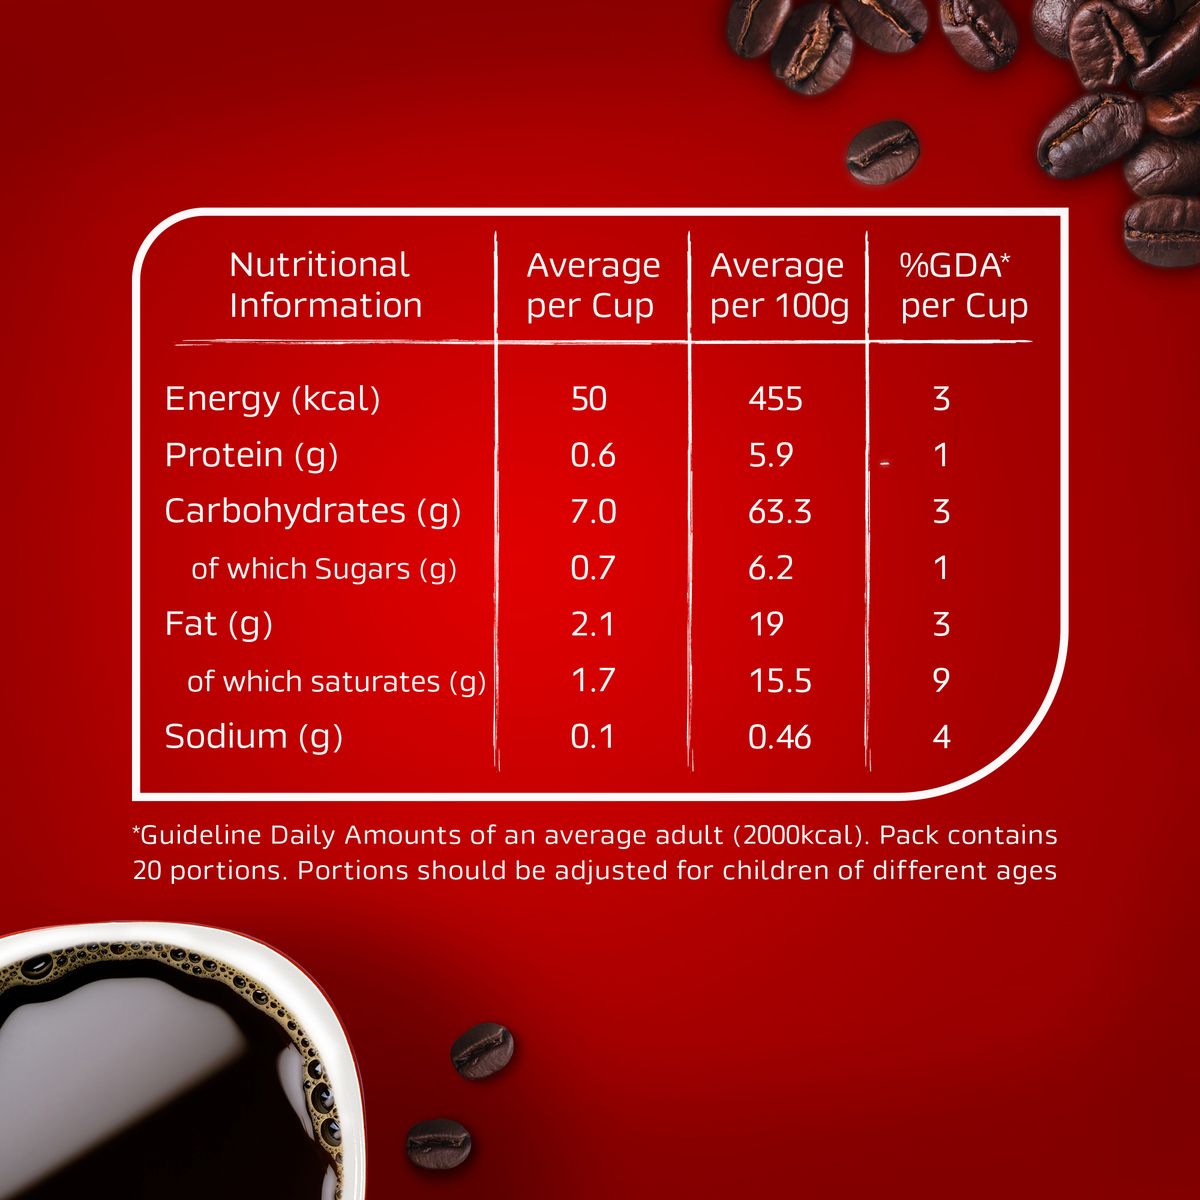 Nescafe Red Mug Instant Coffee 50 g